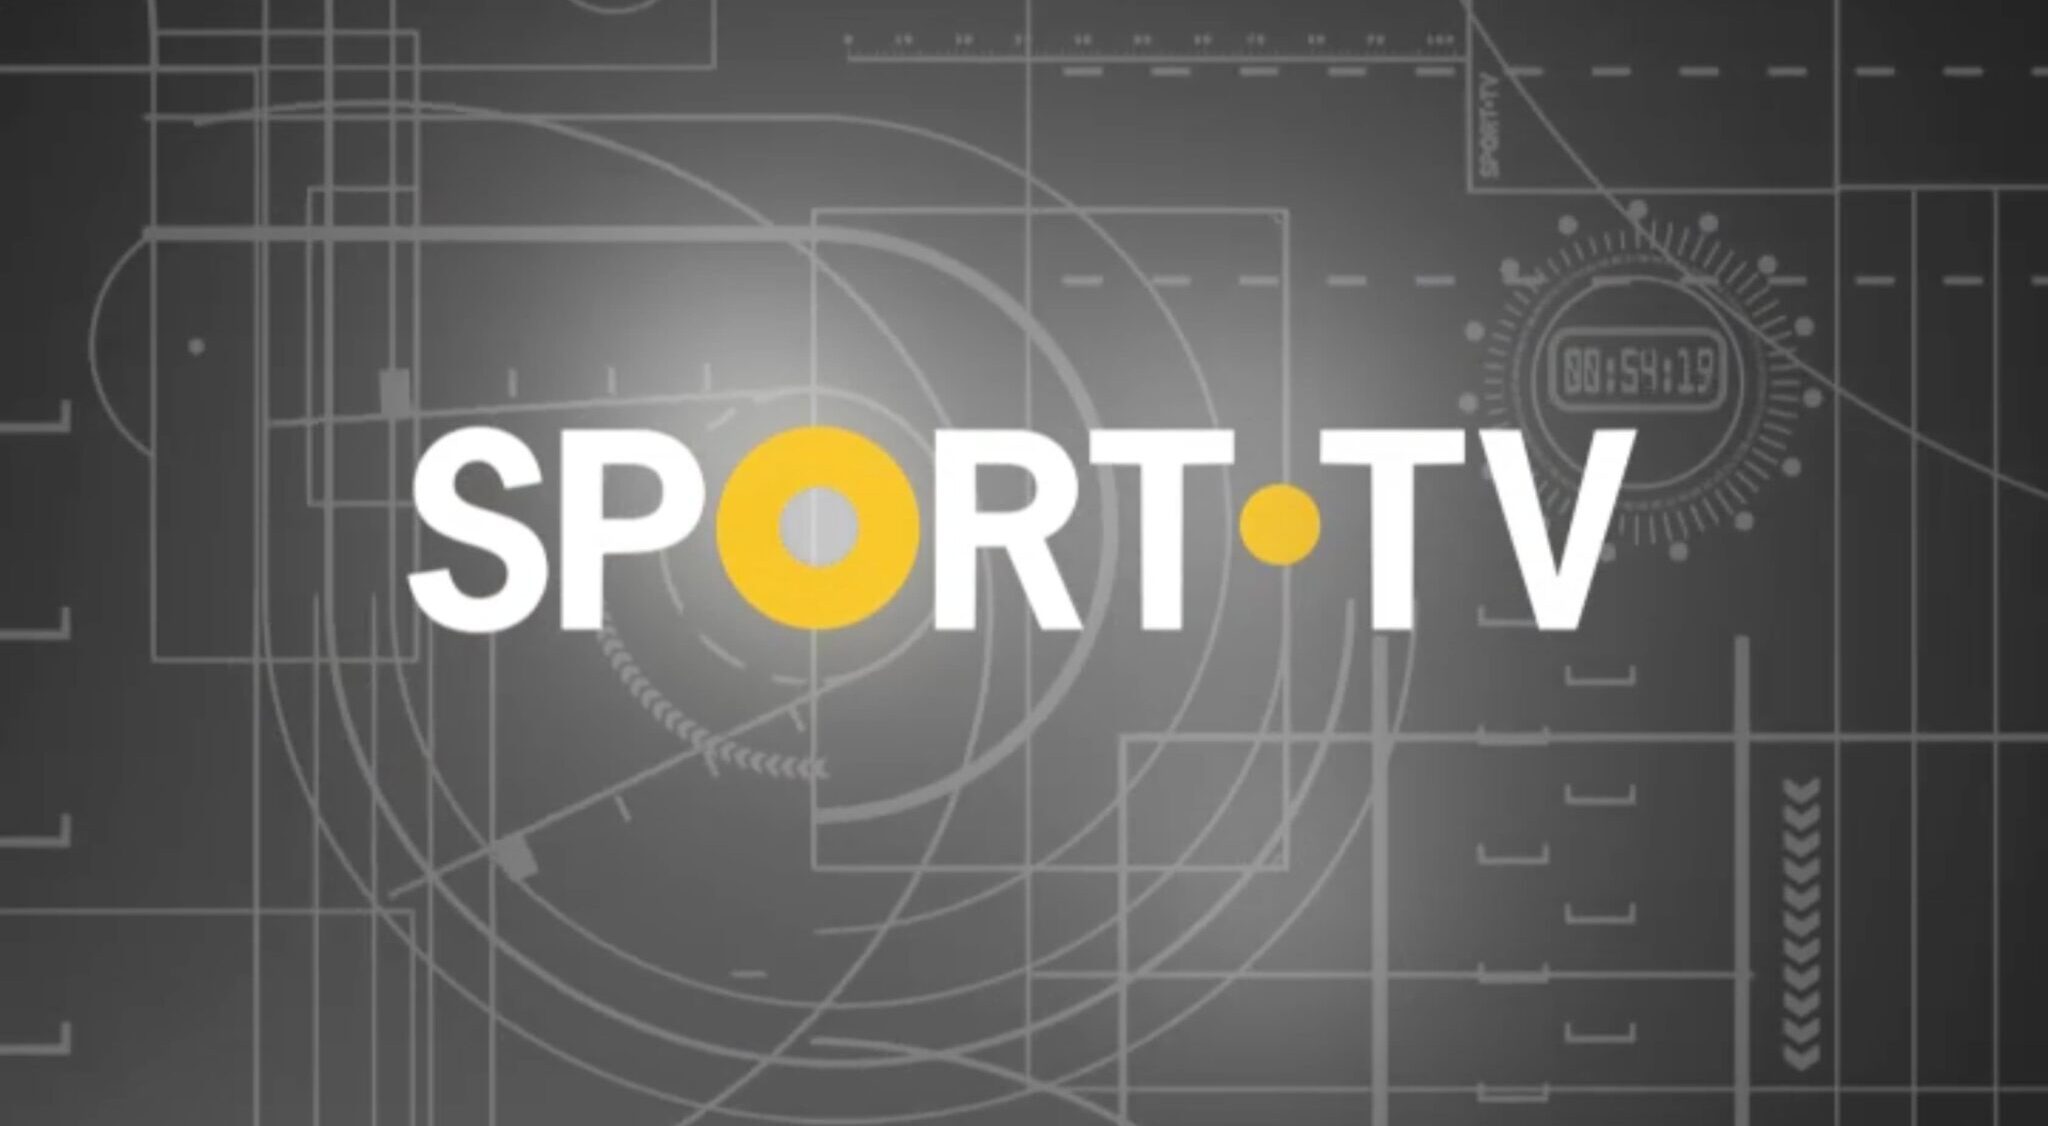 Sport Tv Scaled E1580486390688 Covid-19: Sport Tv Transmite Jogos De Futebol Em Sinal Aberto [Atualizado]